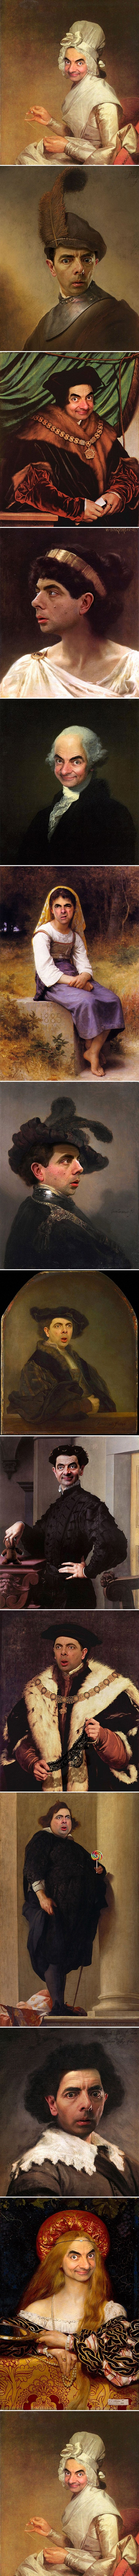 Kako bi stare umjetničke slike izgledale kad bi na svakoj od njih bio portret Mr. Beana?